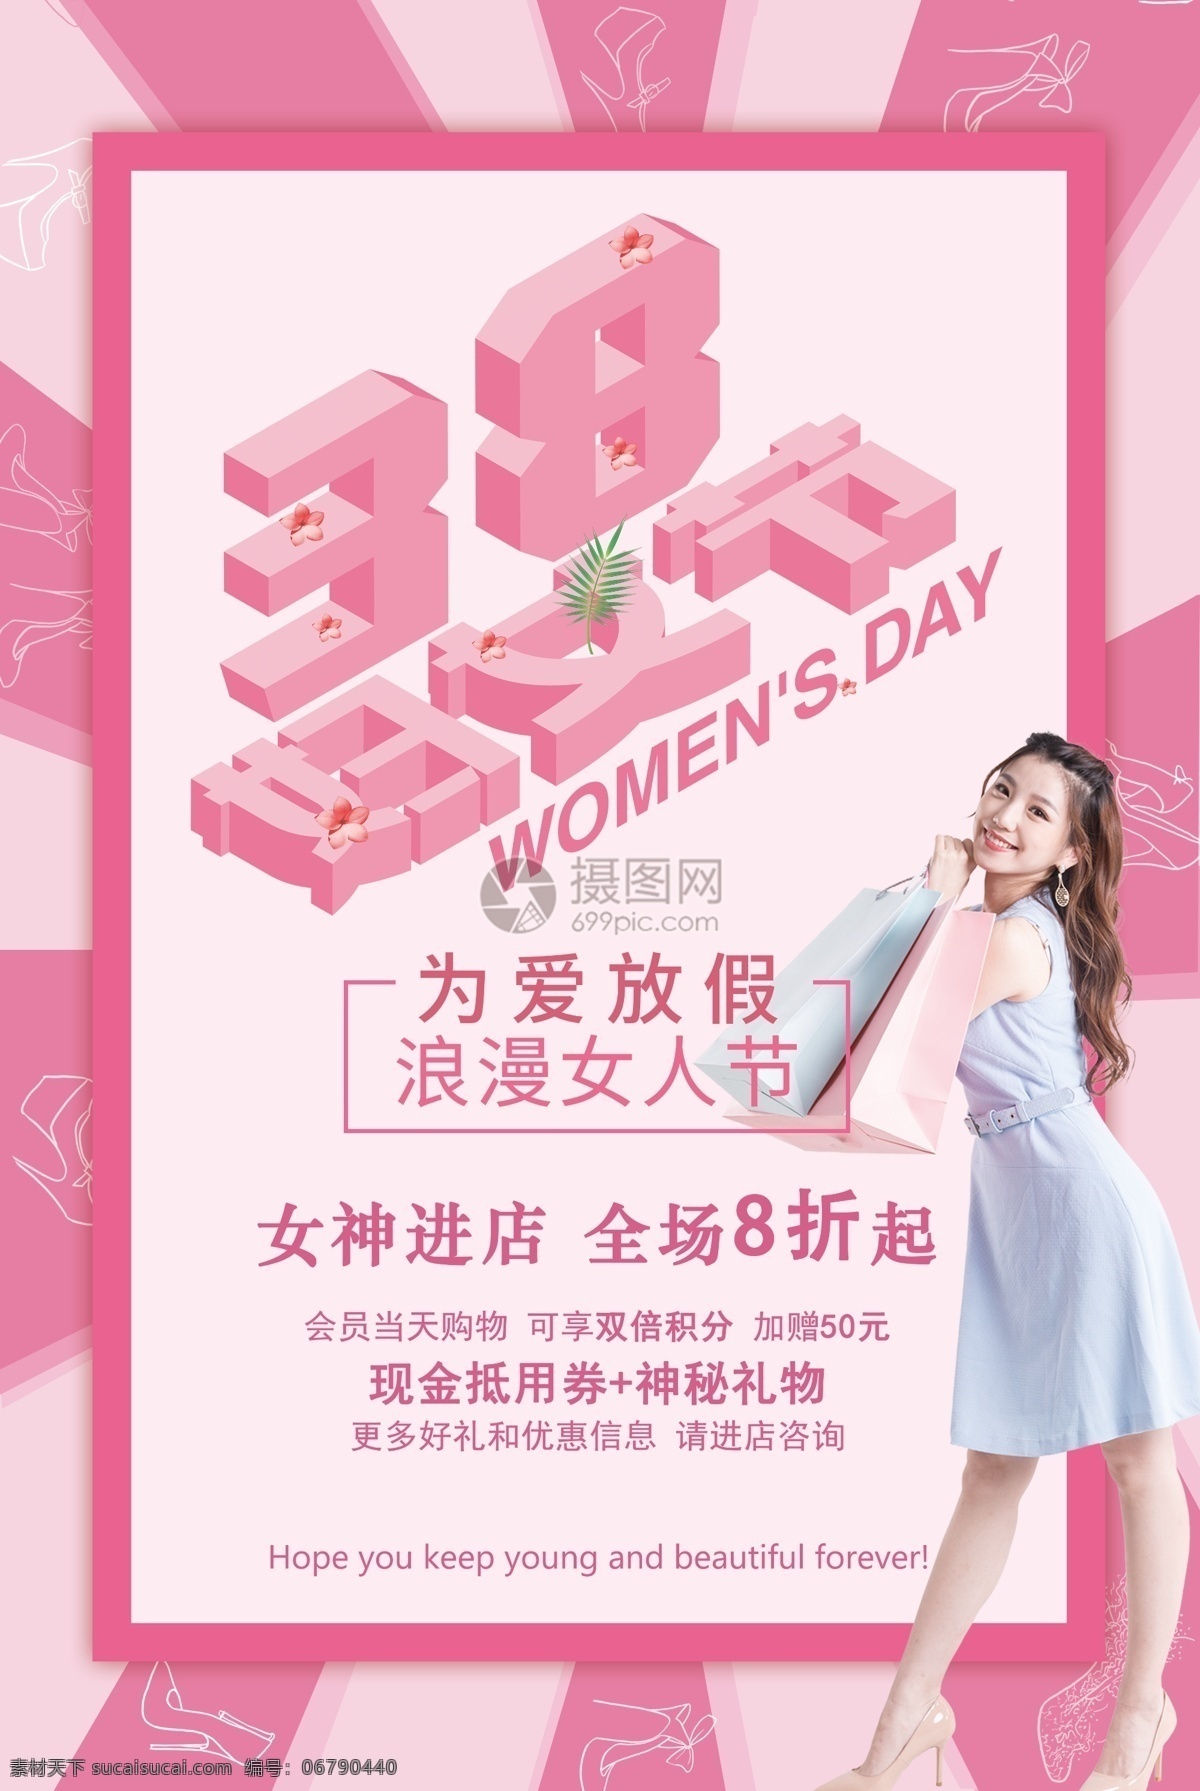 粉色 简约 3.8 妇女节 节日 海报 三八 女神节 清新 2.5d字体 节日促销 商场促销 促销 服装促销